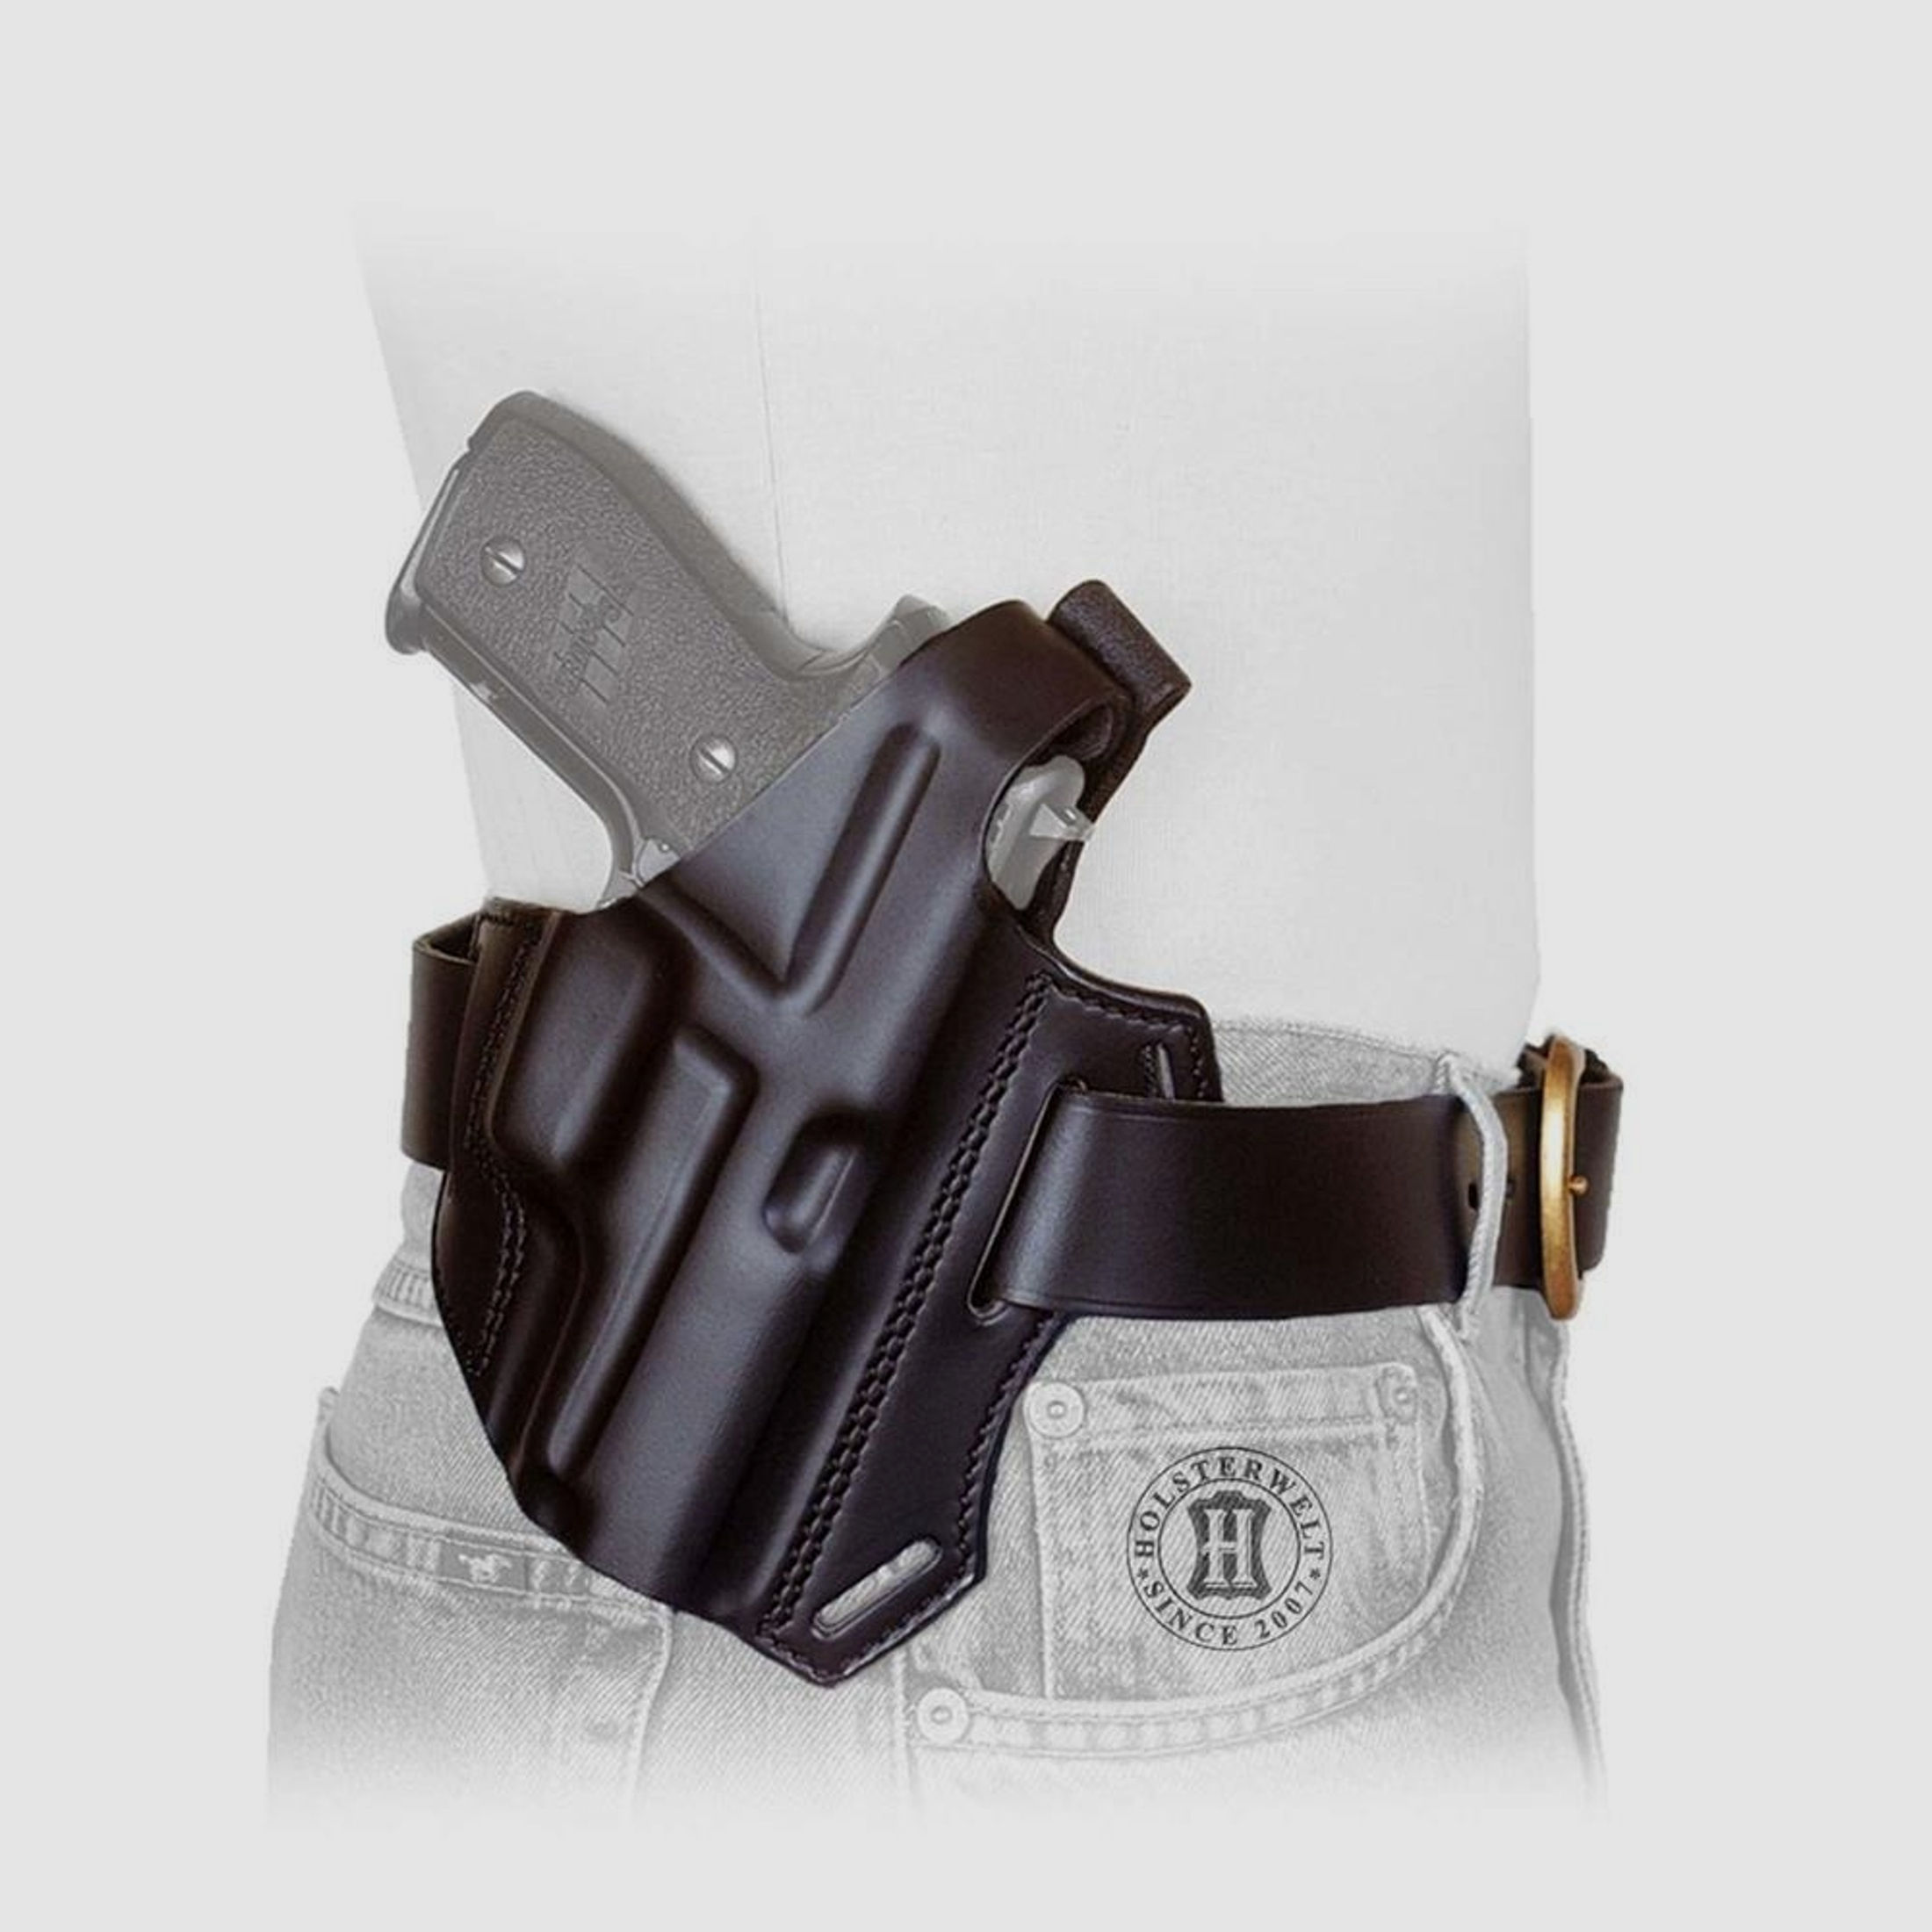 Gürtelholster / Schulterholster MULTI VARIO Glock 19/23,17/22,34/35, S&W 4506,1006,5904/06,-Braun-Rechtshänder